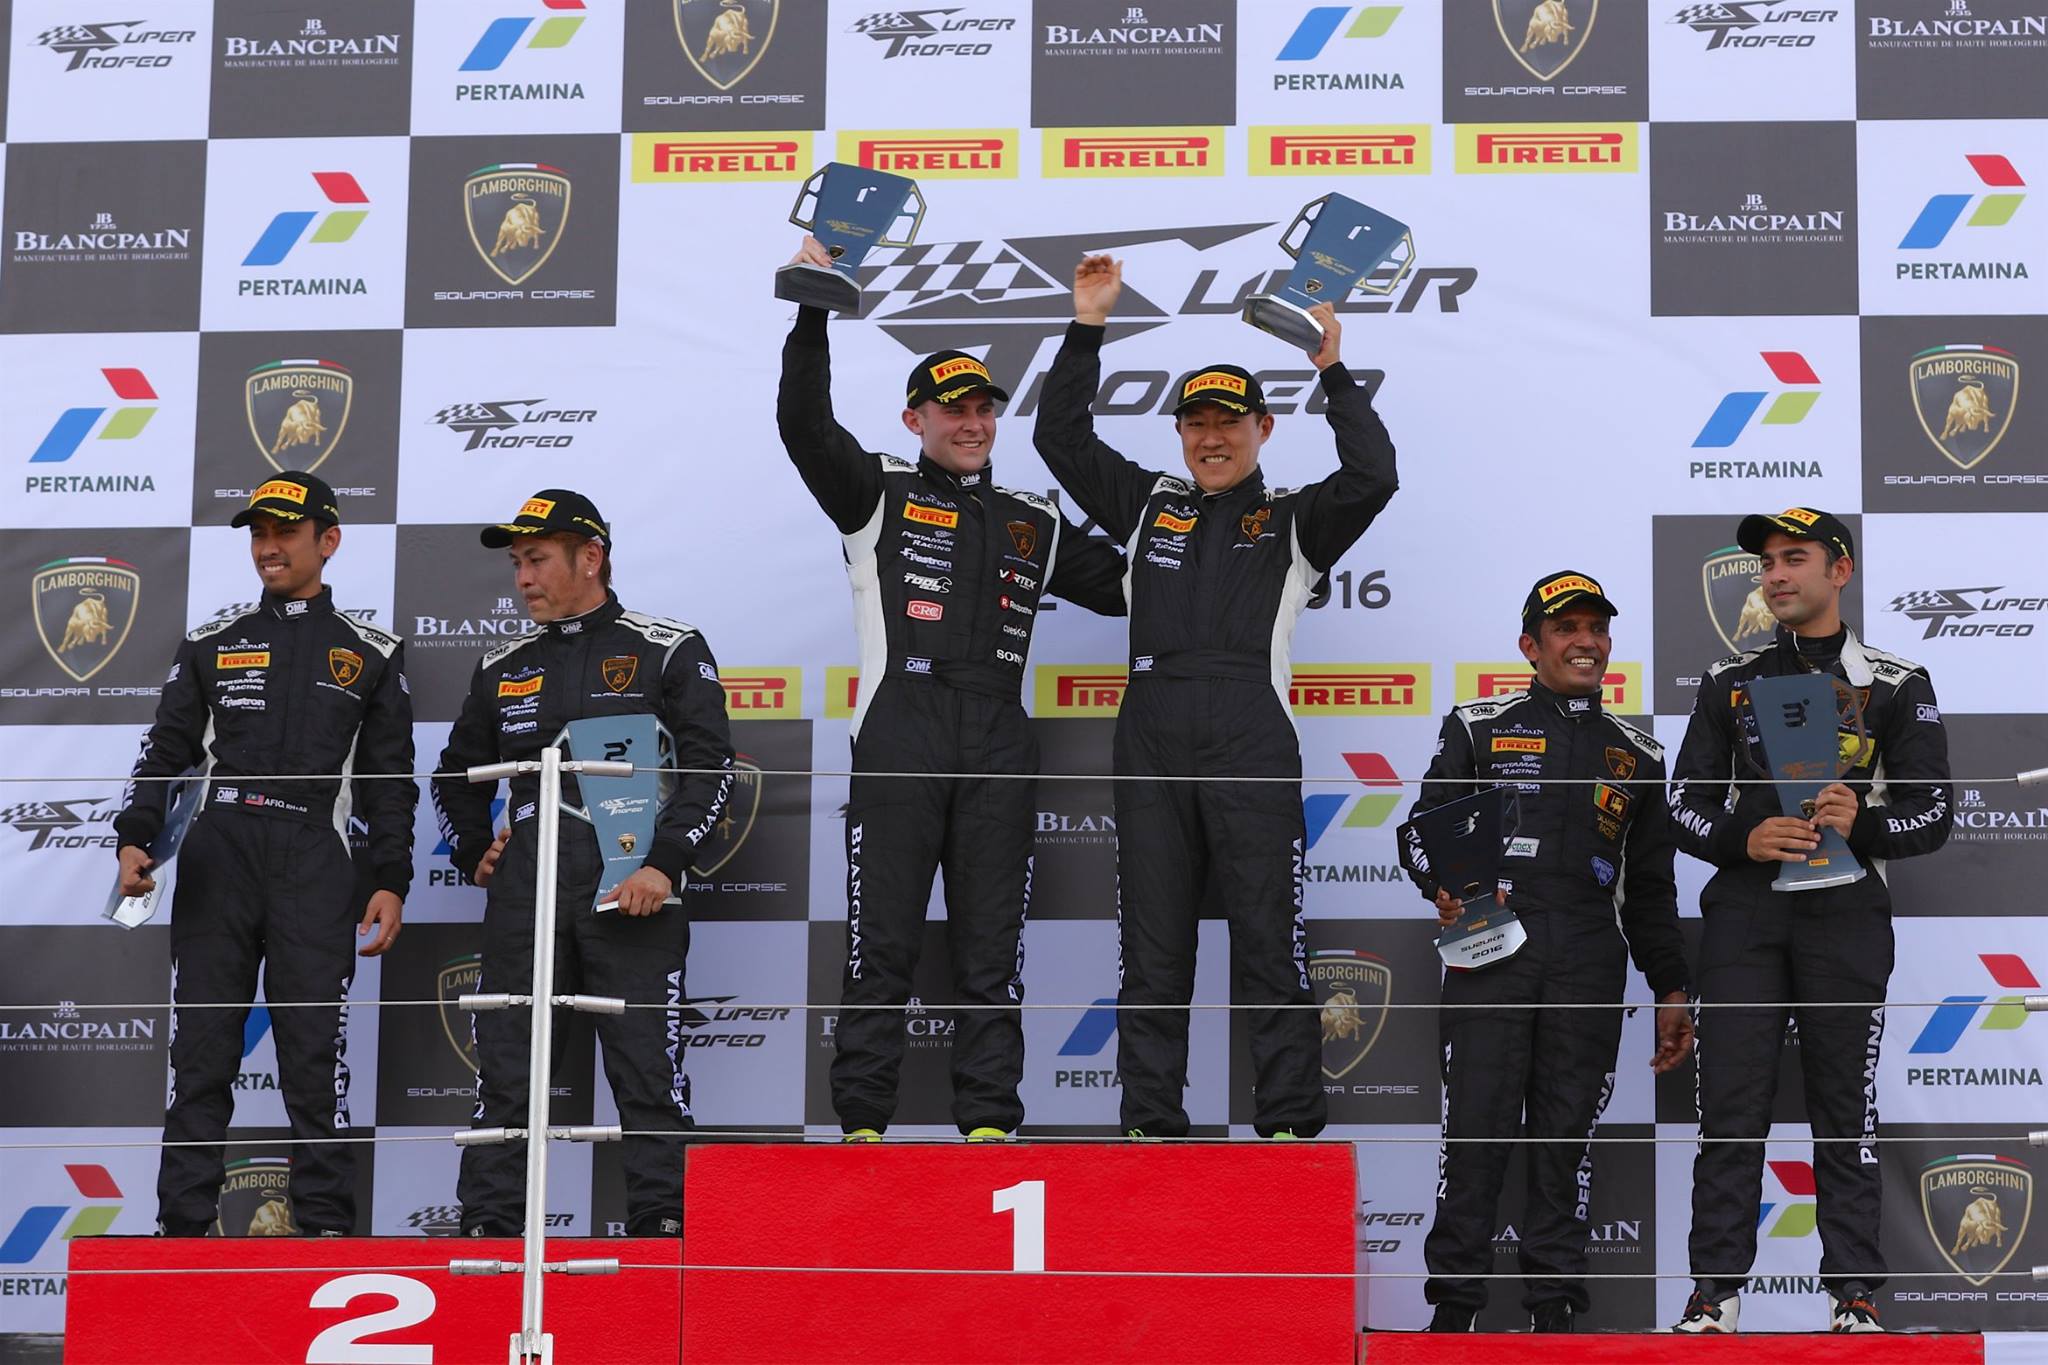 Jono Lester wins at Suzuka in Lamborghini Super Trofeo Asia